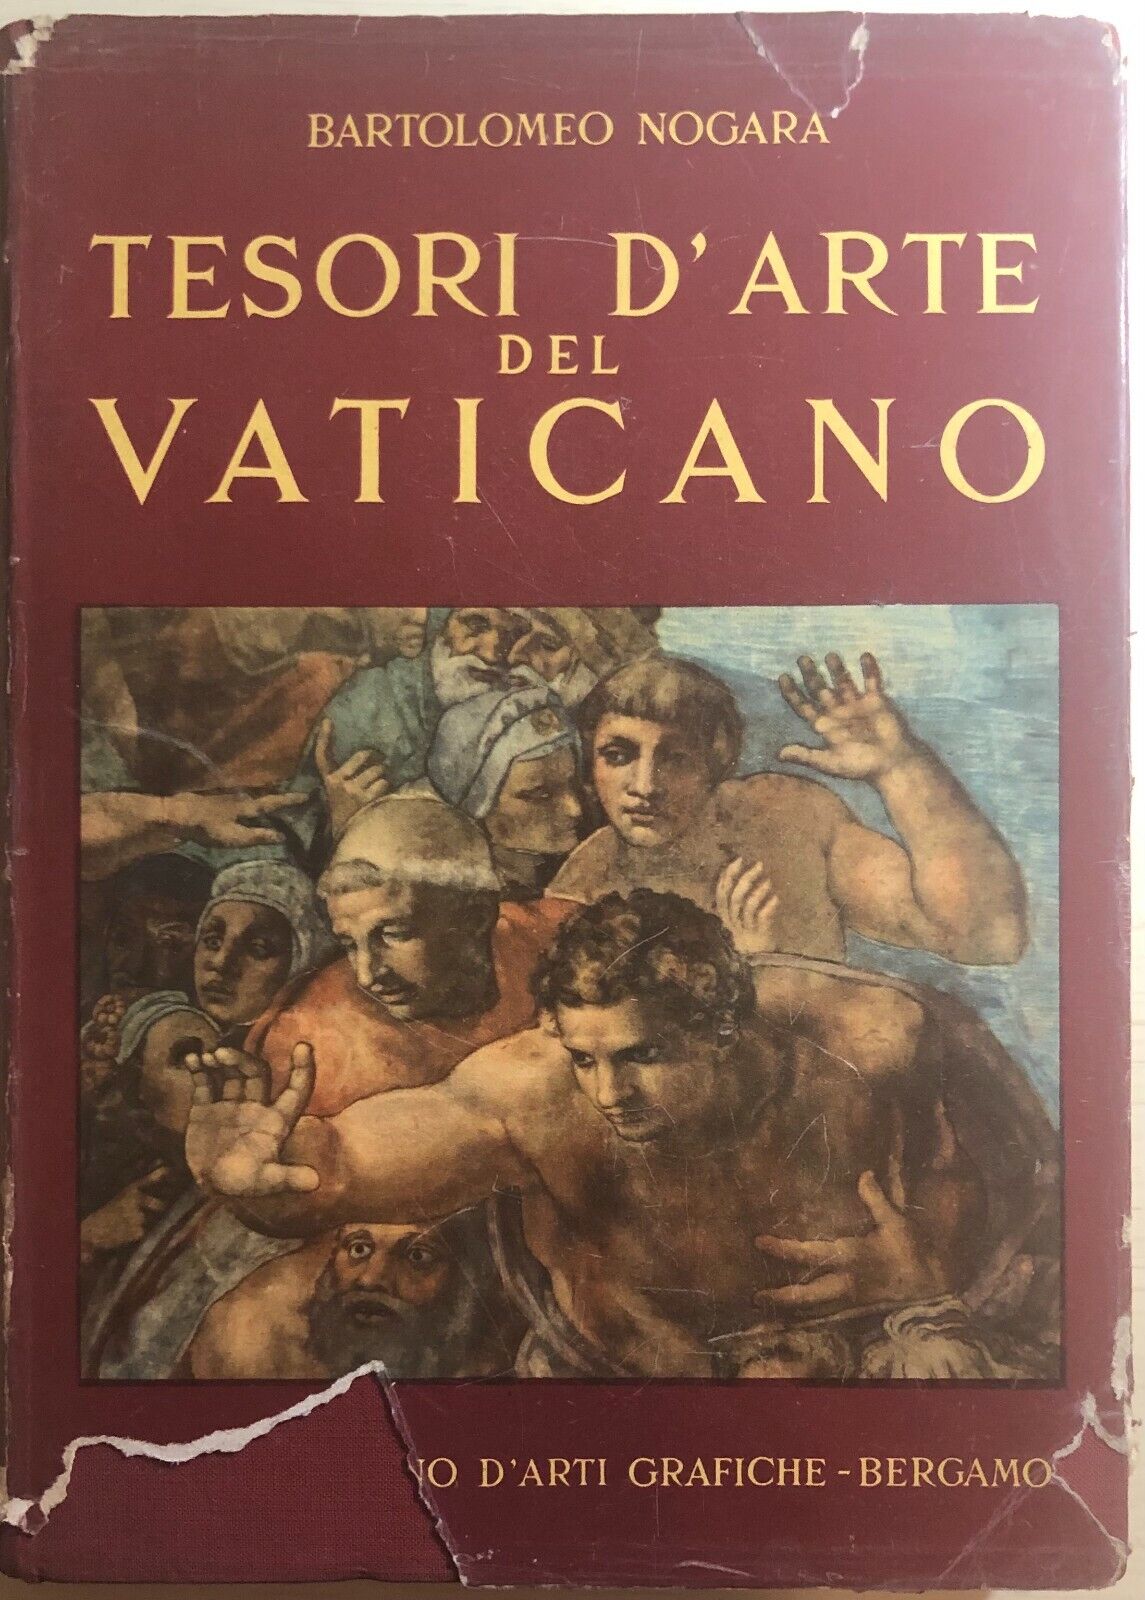 Tesori d'arte del Vaticano di Bartolomeo Nogara,  1950,  Istituto Italiano d'Art